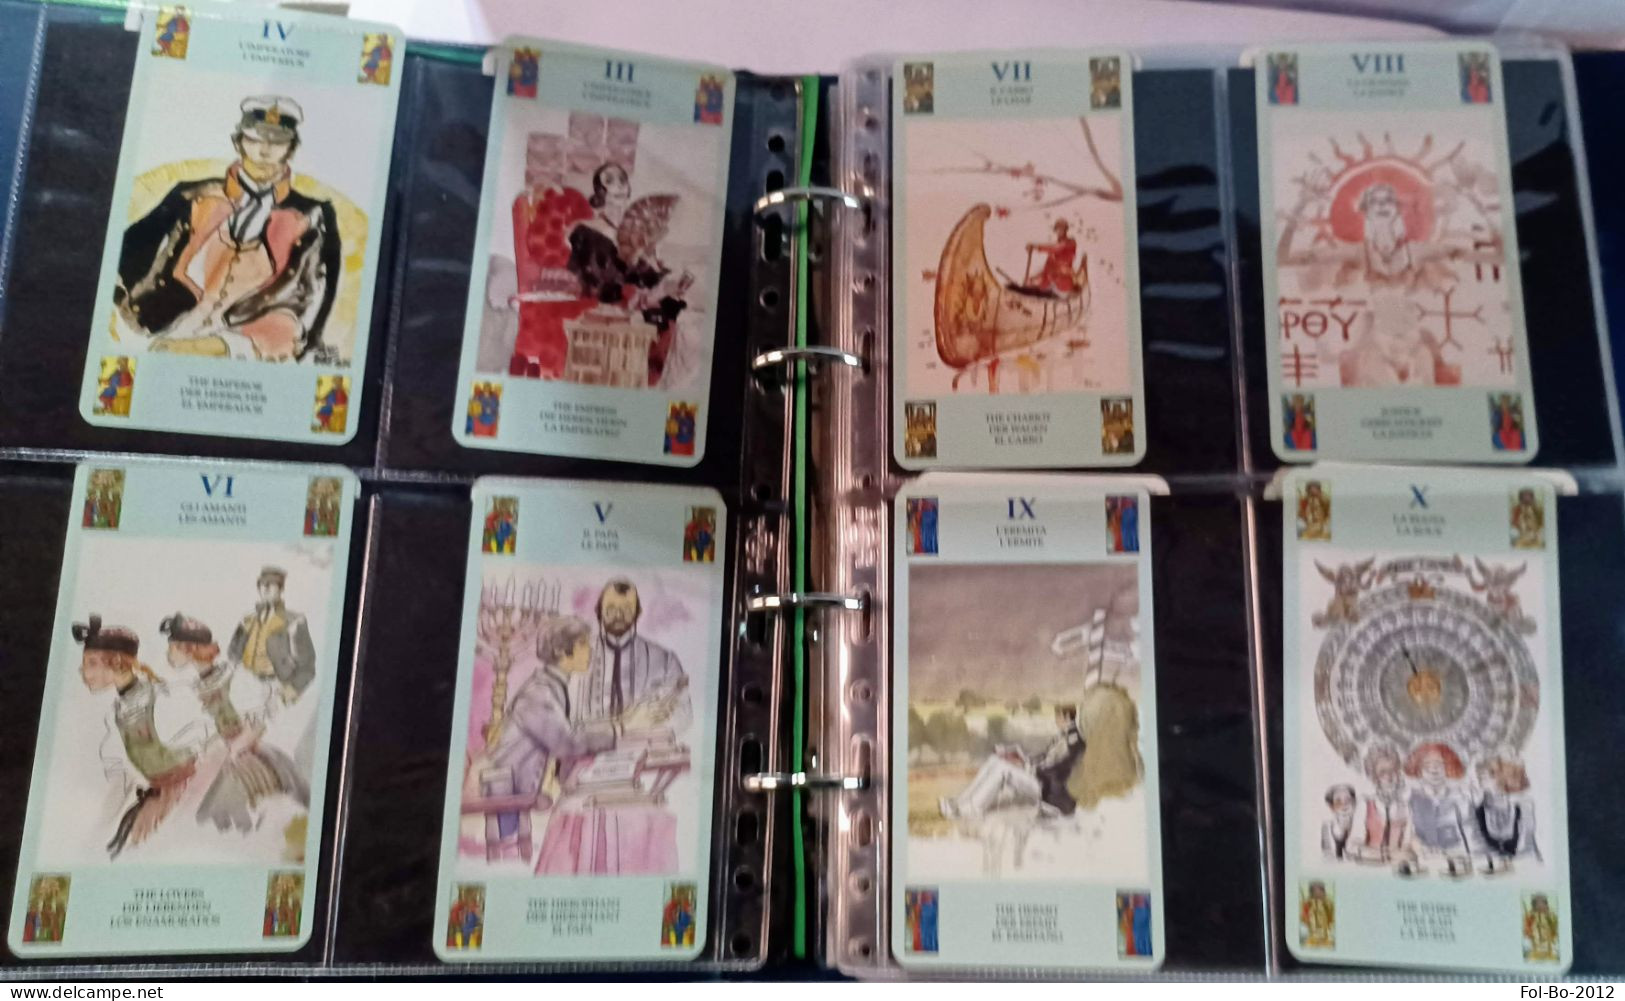 Corto maltese i tarocchi serie completa di 78 carte+istruzioni lo scarabeo.